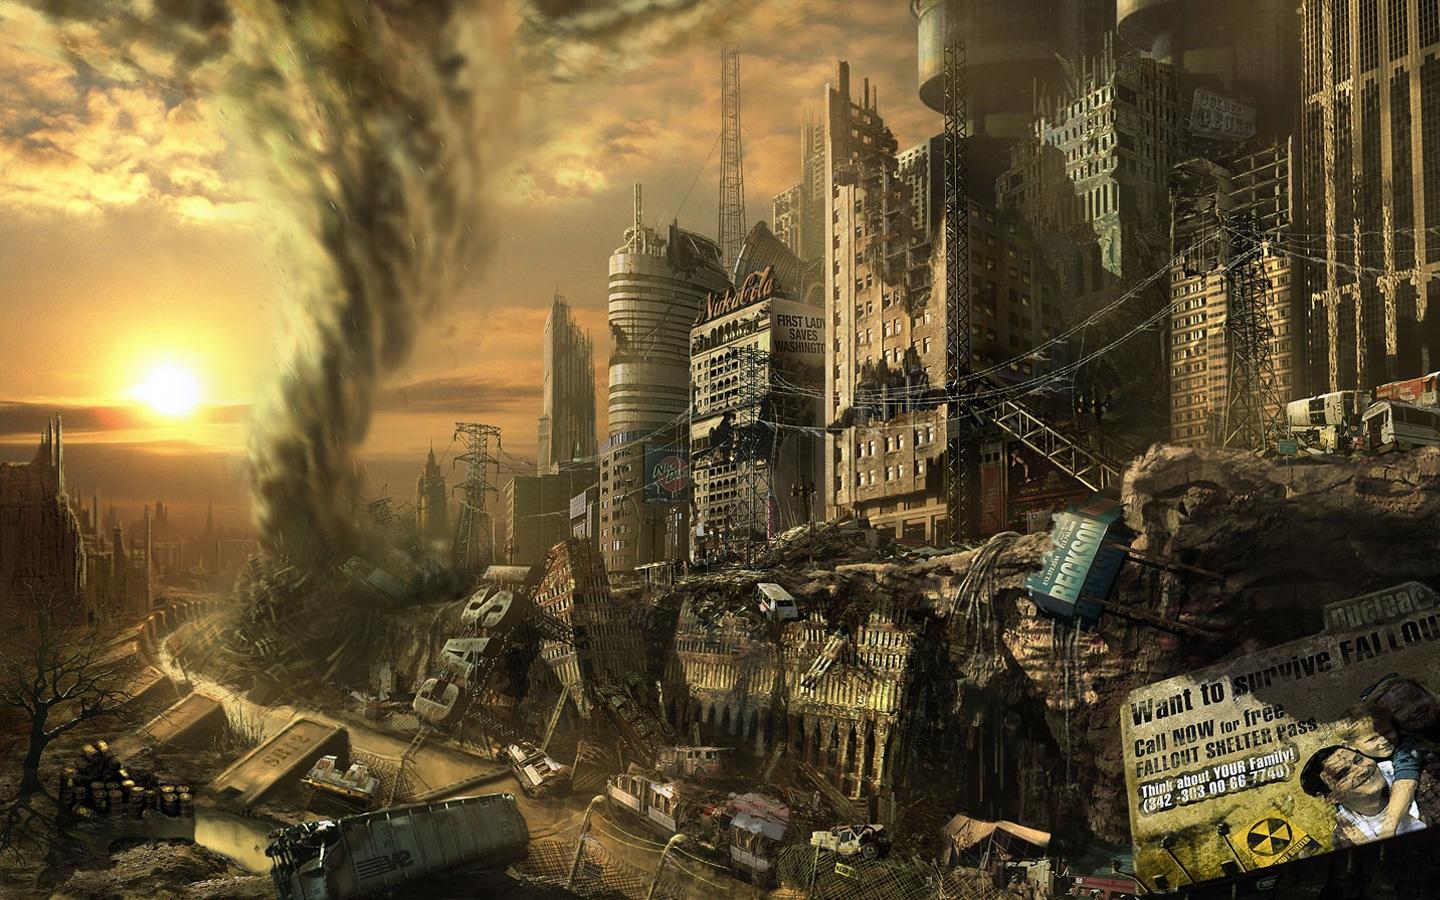 Fallout 3 wallpaper. Fallout 3